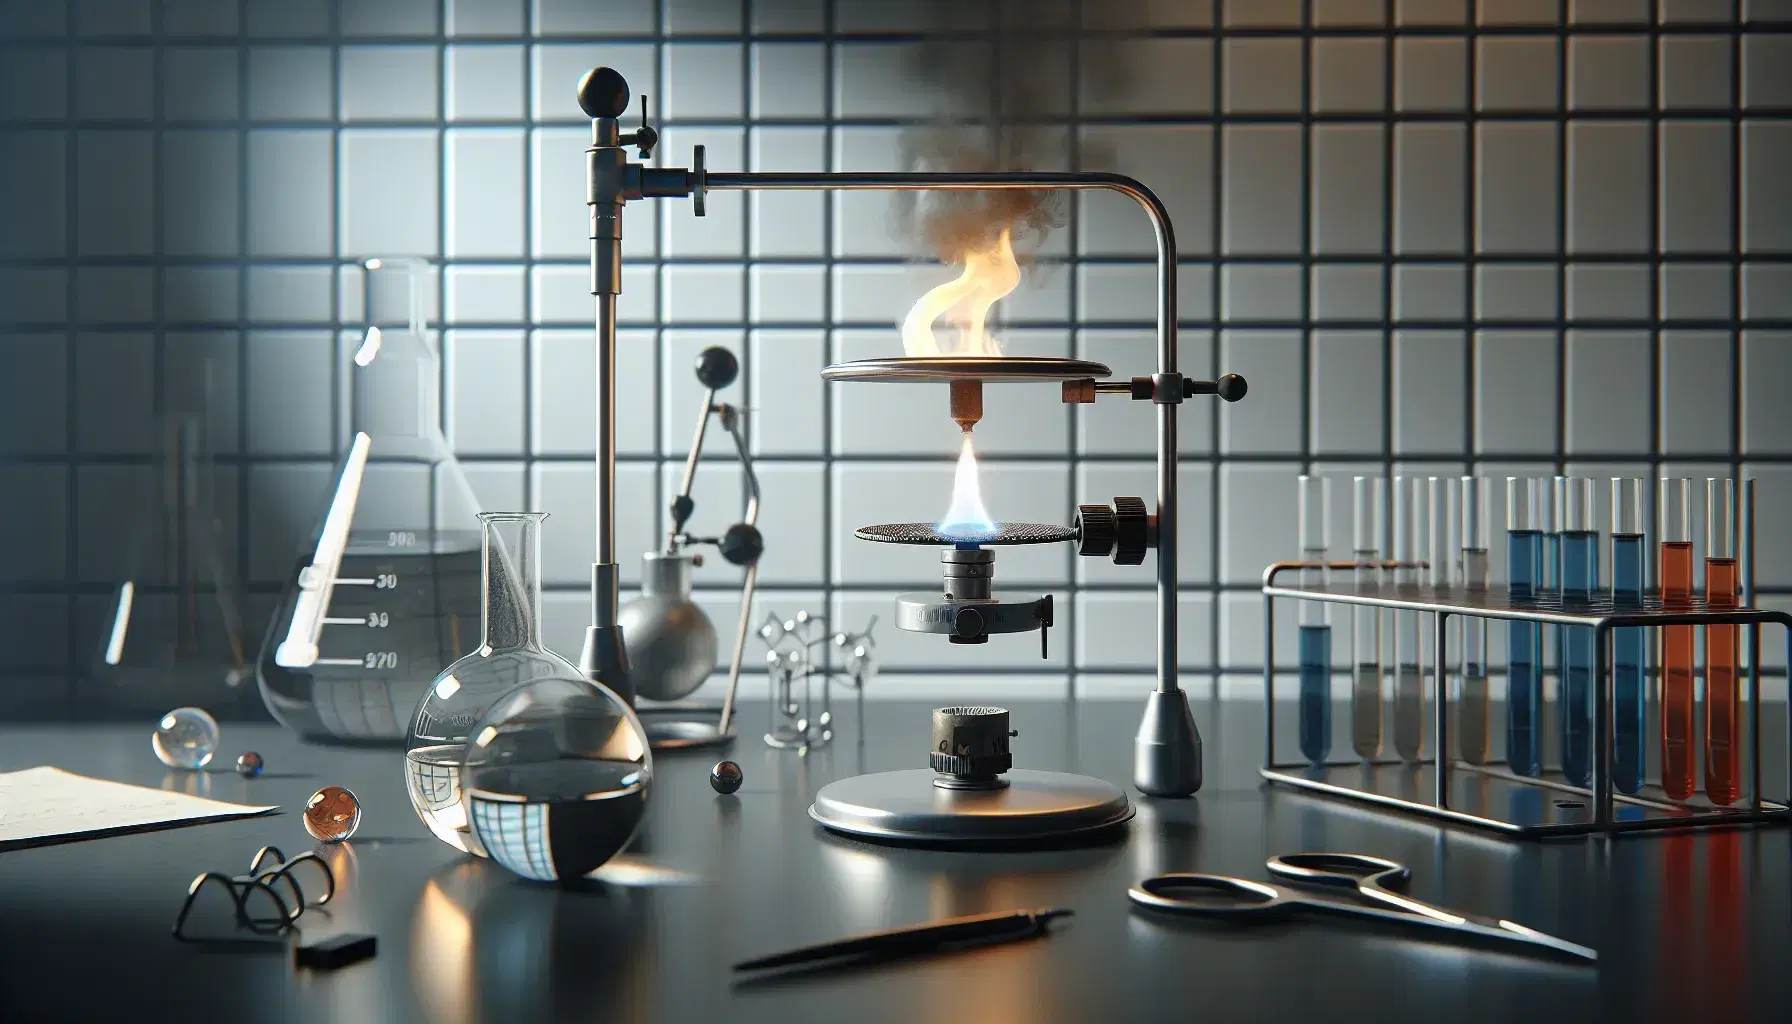 Escena de laboratorio científico con mesa gris, mechero Bunsen encendido, trípode con sustancia química ardiendo, matraz Erlenmeyer con líquido incoloro y tubo de ensayo con solución azul.